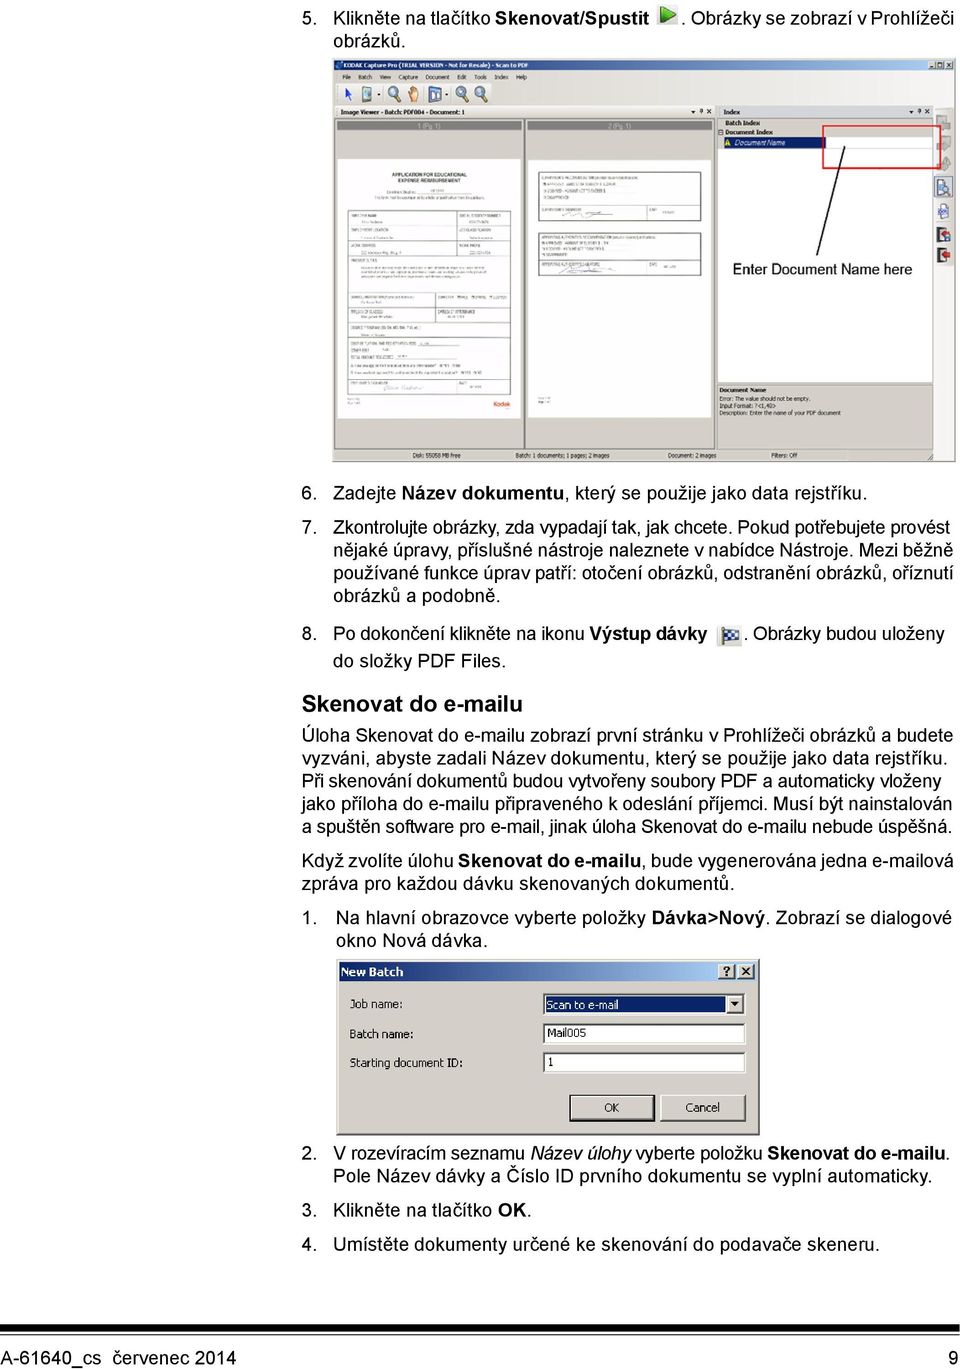 Mezi běžně používané funkce úprav patří: otočení obrázků, odstranění obrázků, oříznutí obrázků a podobně. 8. Po dokončení klikněte na ikonu Výstup dávky. Obrázky budou uloženy do složky PDF Files.